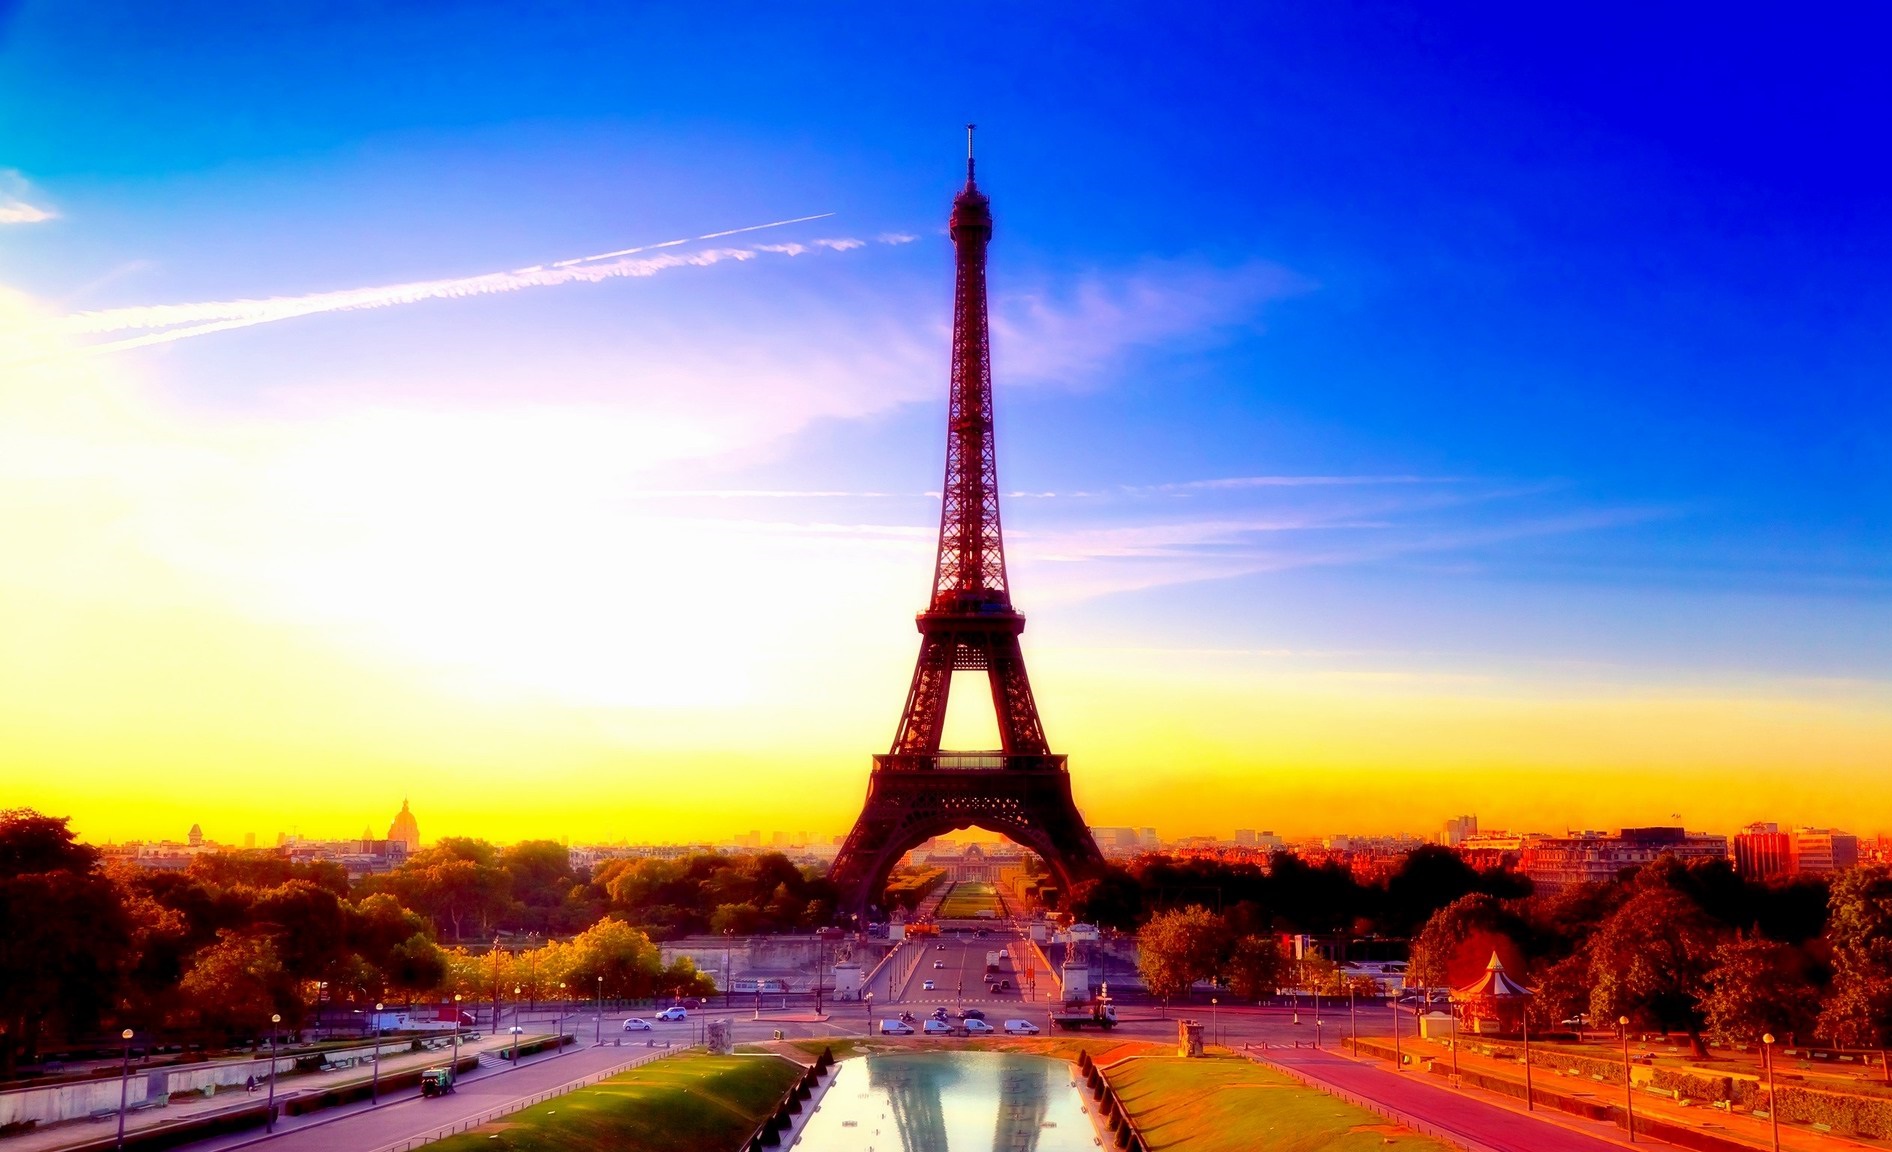 Tháp Eiffel là một điểm đến du lịch tại nước Pháp nổi tiếng trên toàn thế giới hiện nay